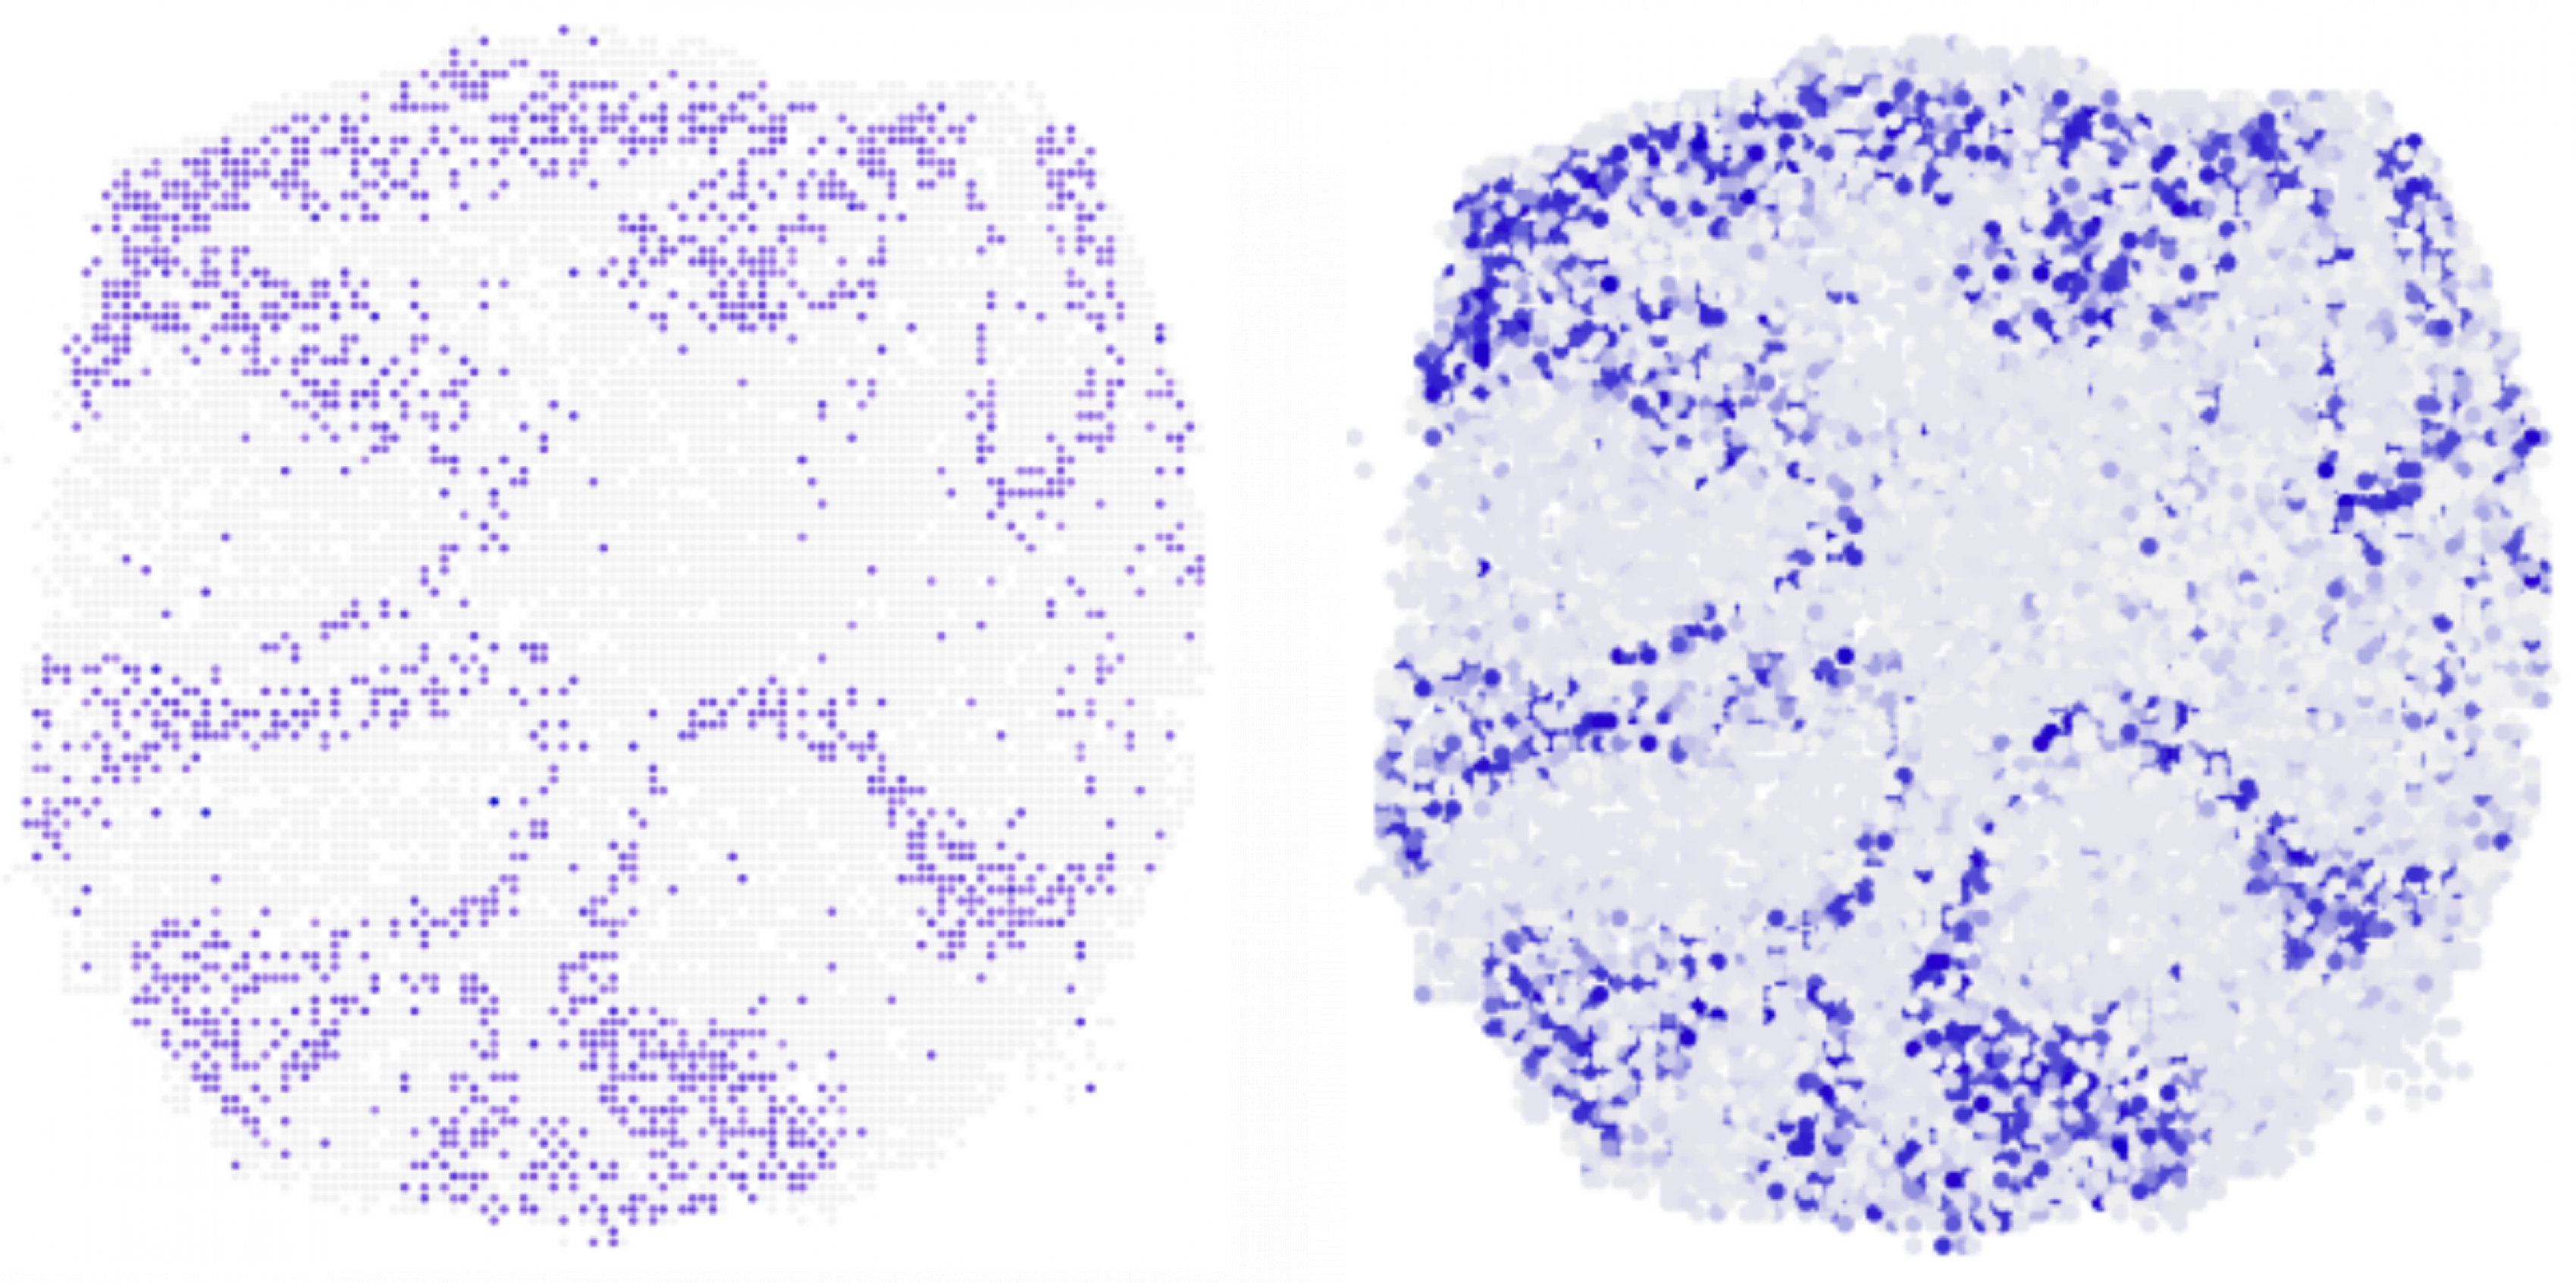 Zwei kreisförmige Scheiben mit zahlreichen violetten Punkten. Jeder Punkt gibt die Lage einer Zelle in der Scheibe an. Beide Bilder sind nahezu identisch.